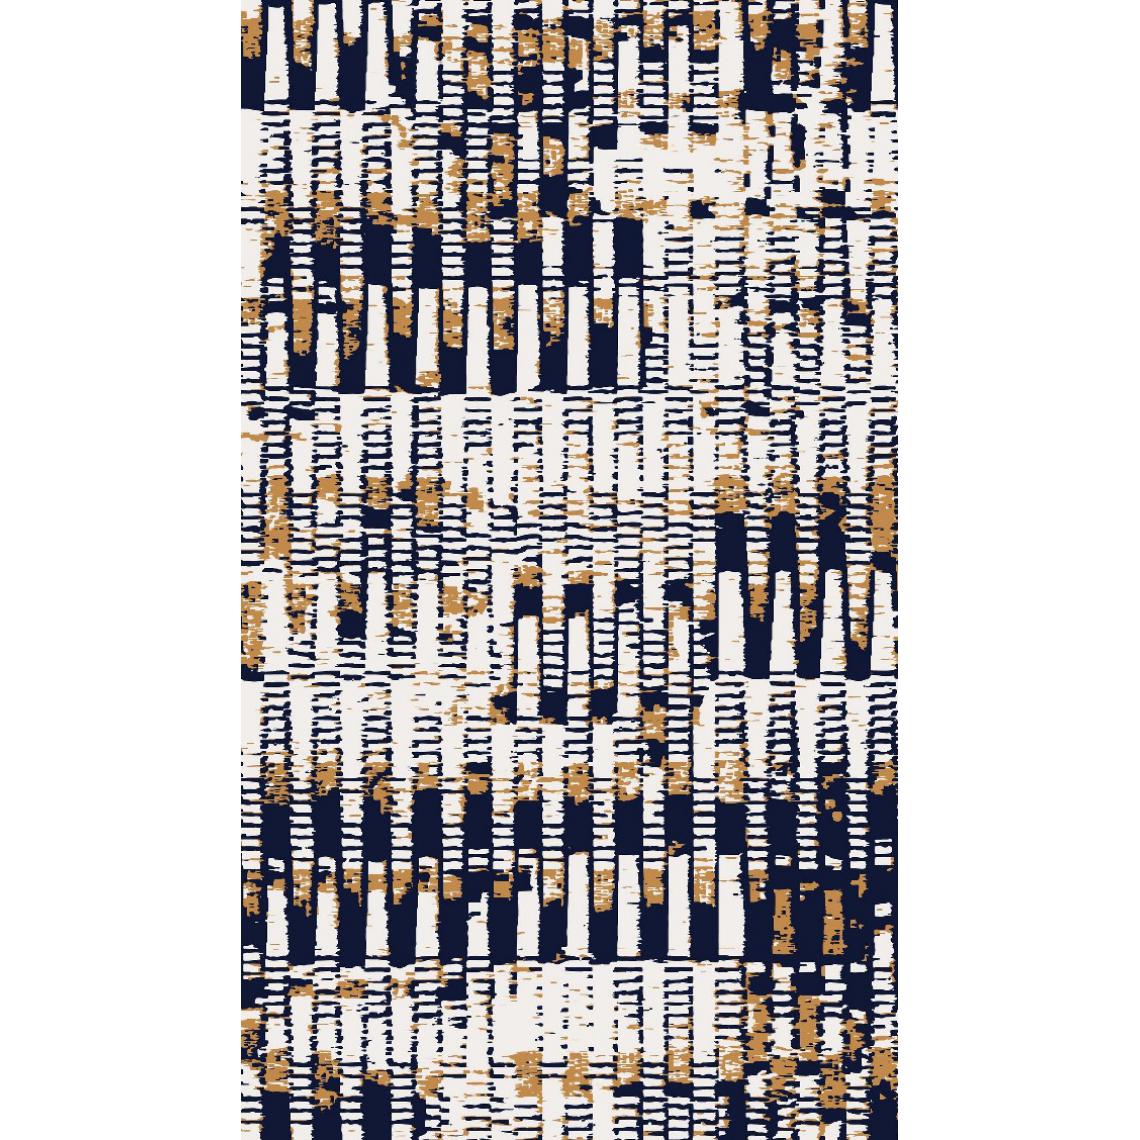 Homemania - HOMEMANIA Tapis Imprimé Genetic 1 - Résumé - Décoration de Maison - antidérapants - Pour Salon, séjour, chambre à coucher - Multicolore en Polyester, Coton, 80 x 120 cm - Tapis